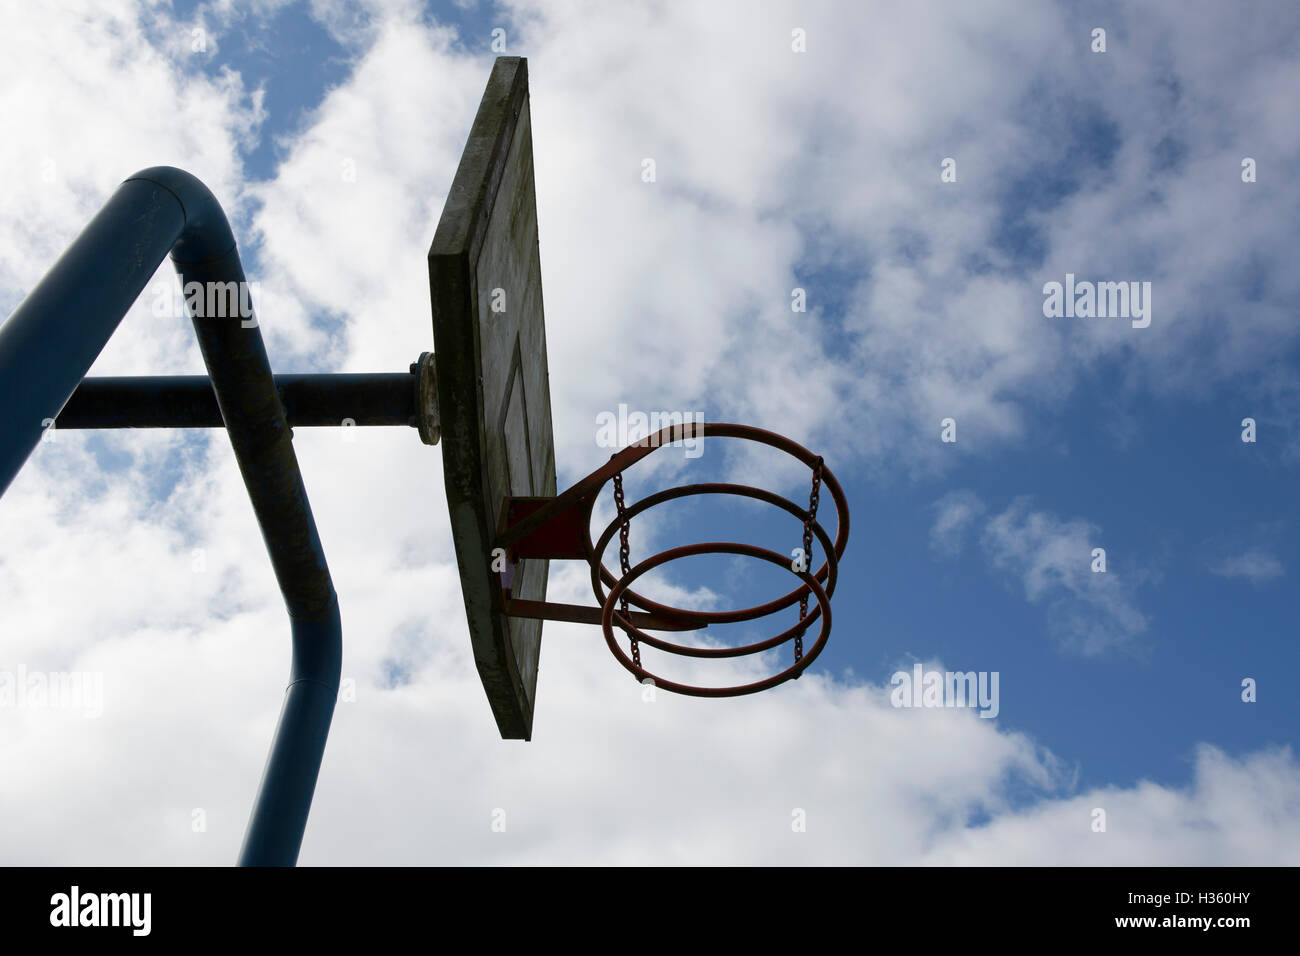 Alt und Metall Spielplatz Basketballkorb, inmitten einer Silhouette gegen einen hellen blauen und bewölkten Himmel. Stockfoto